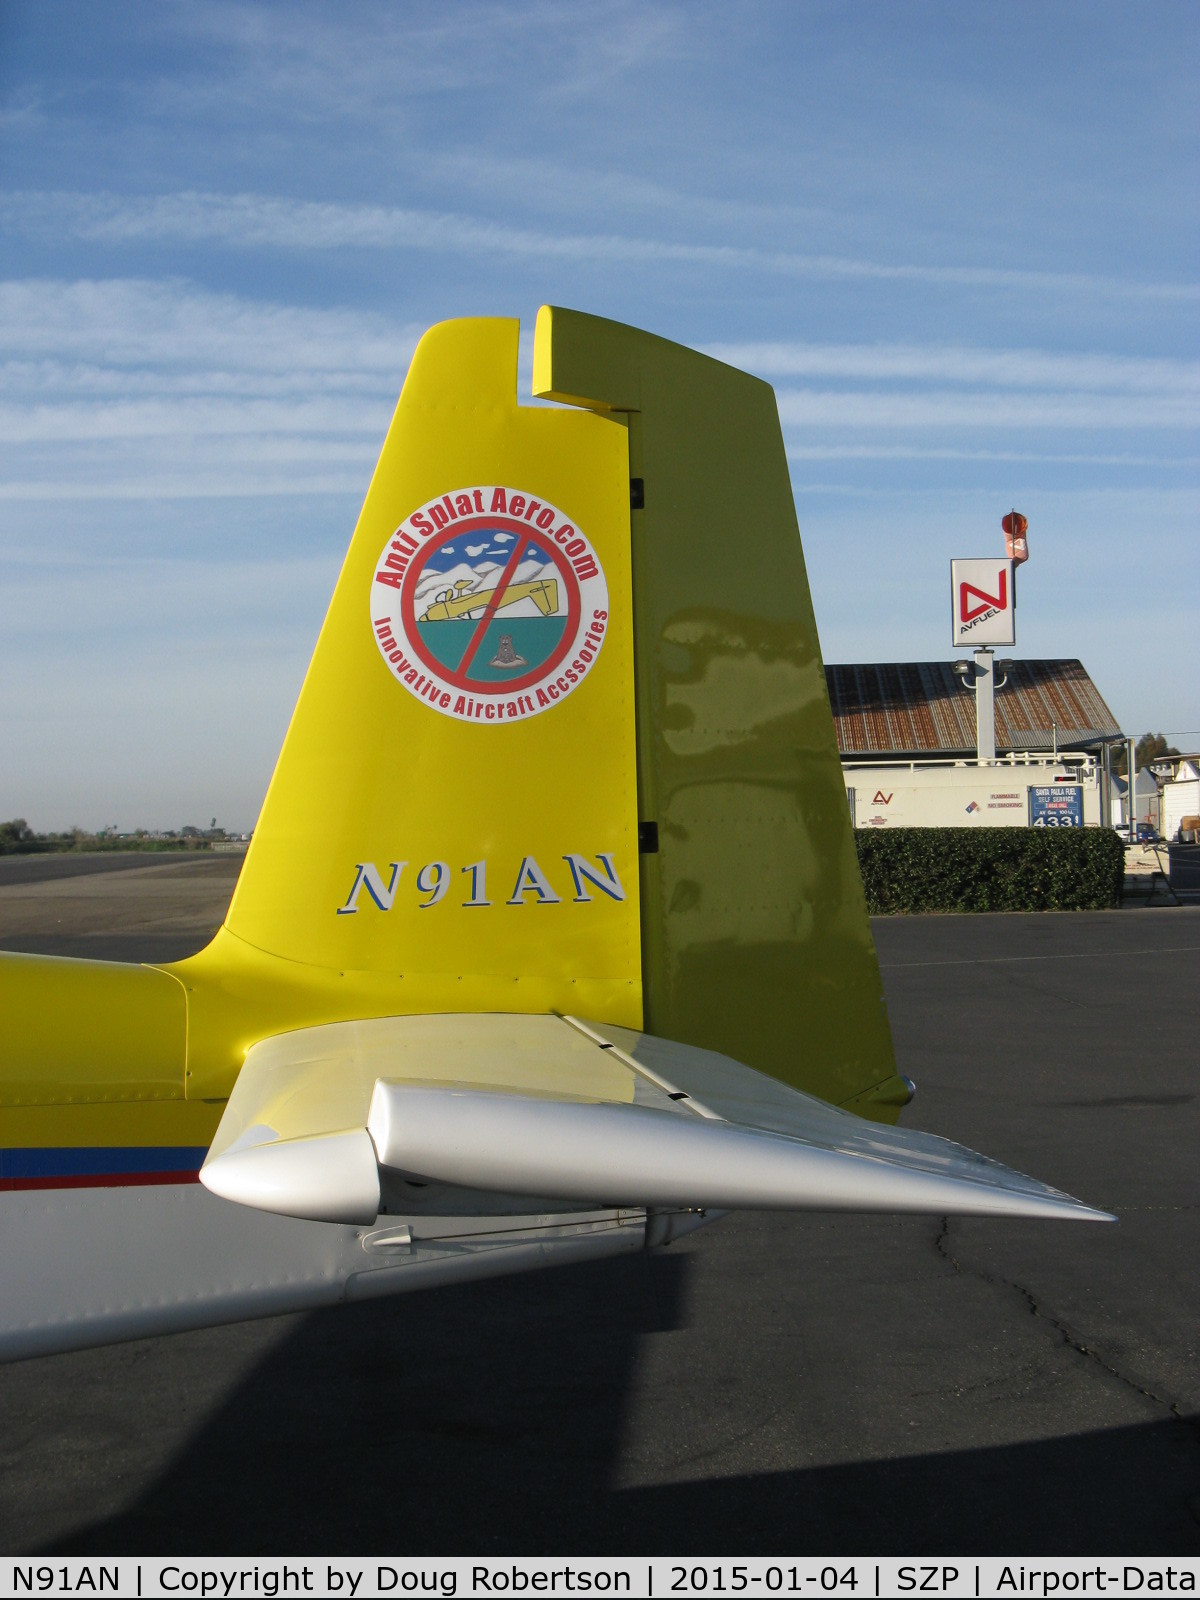 N91AN, 2003 Vans RV-9A C/N 90229, 2003 Vannata VAN's RV-9A, Lycoming O-320 160 Hp, tail logo